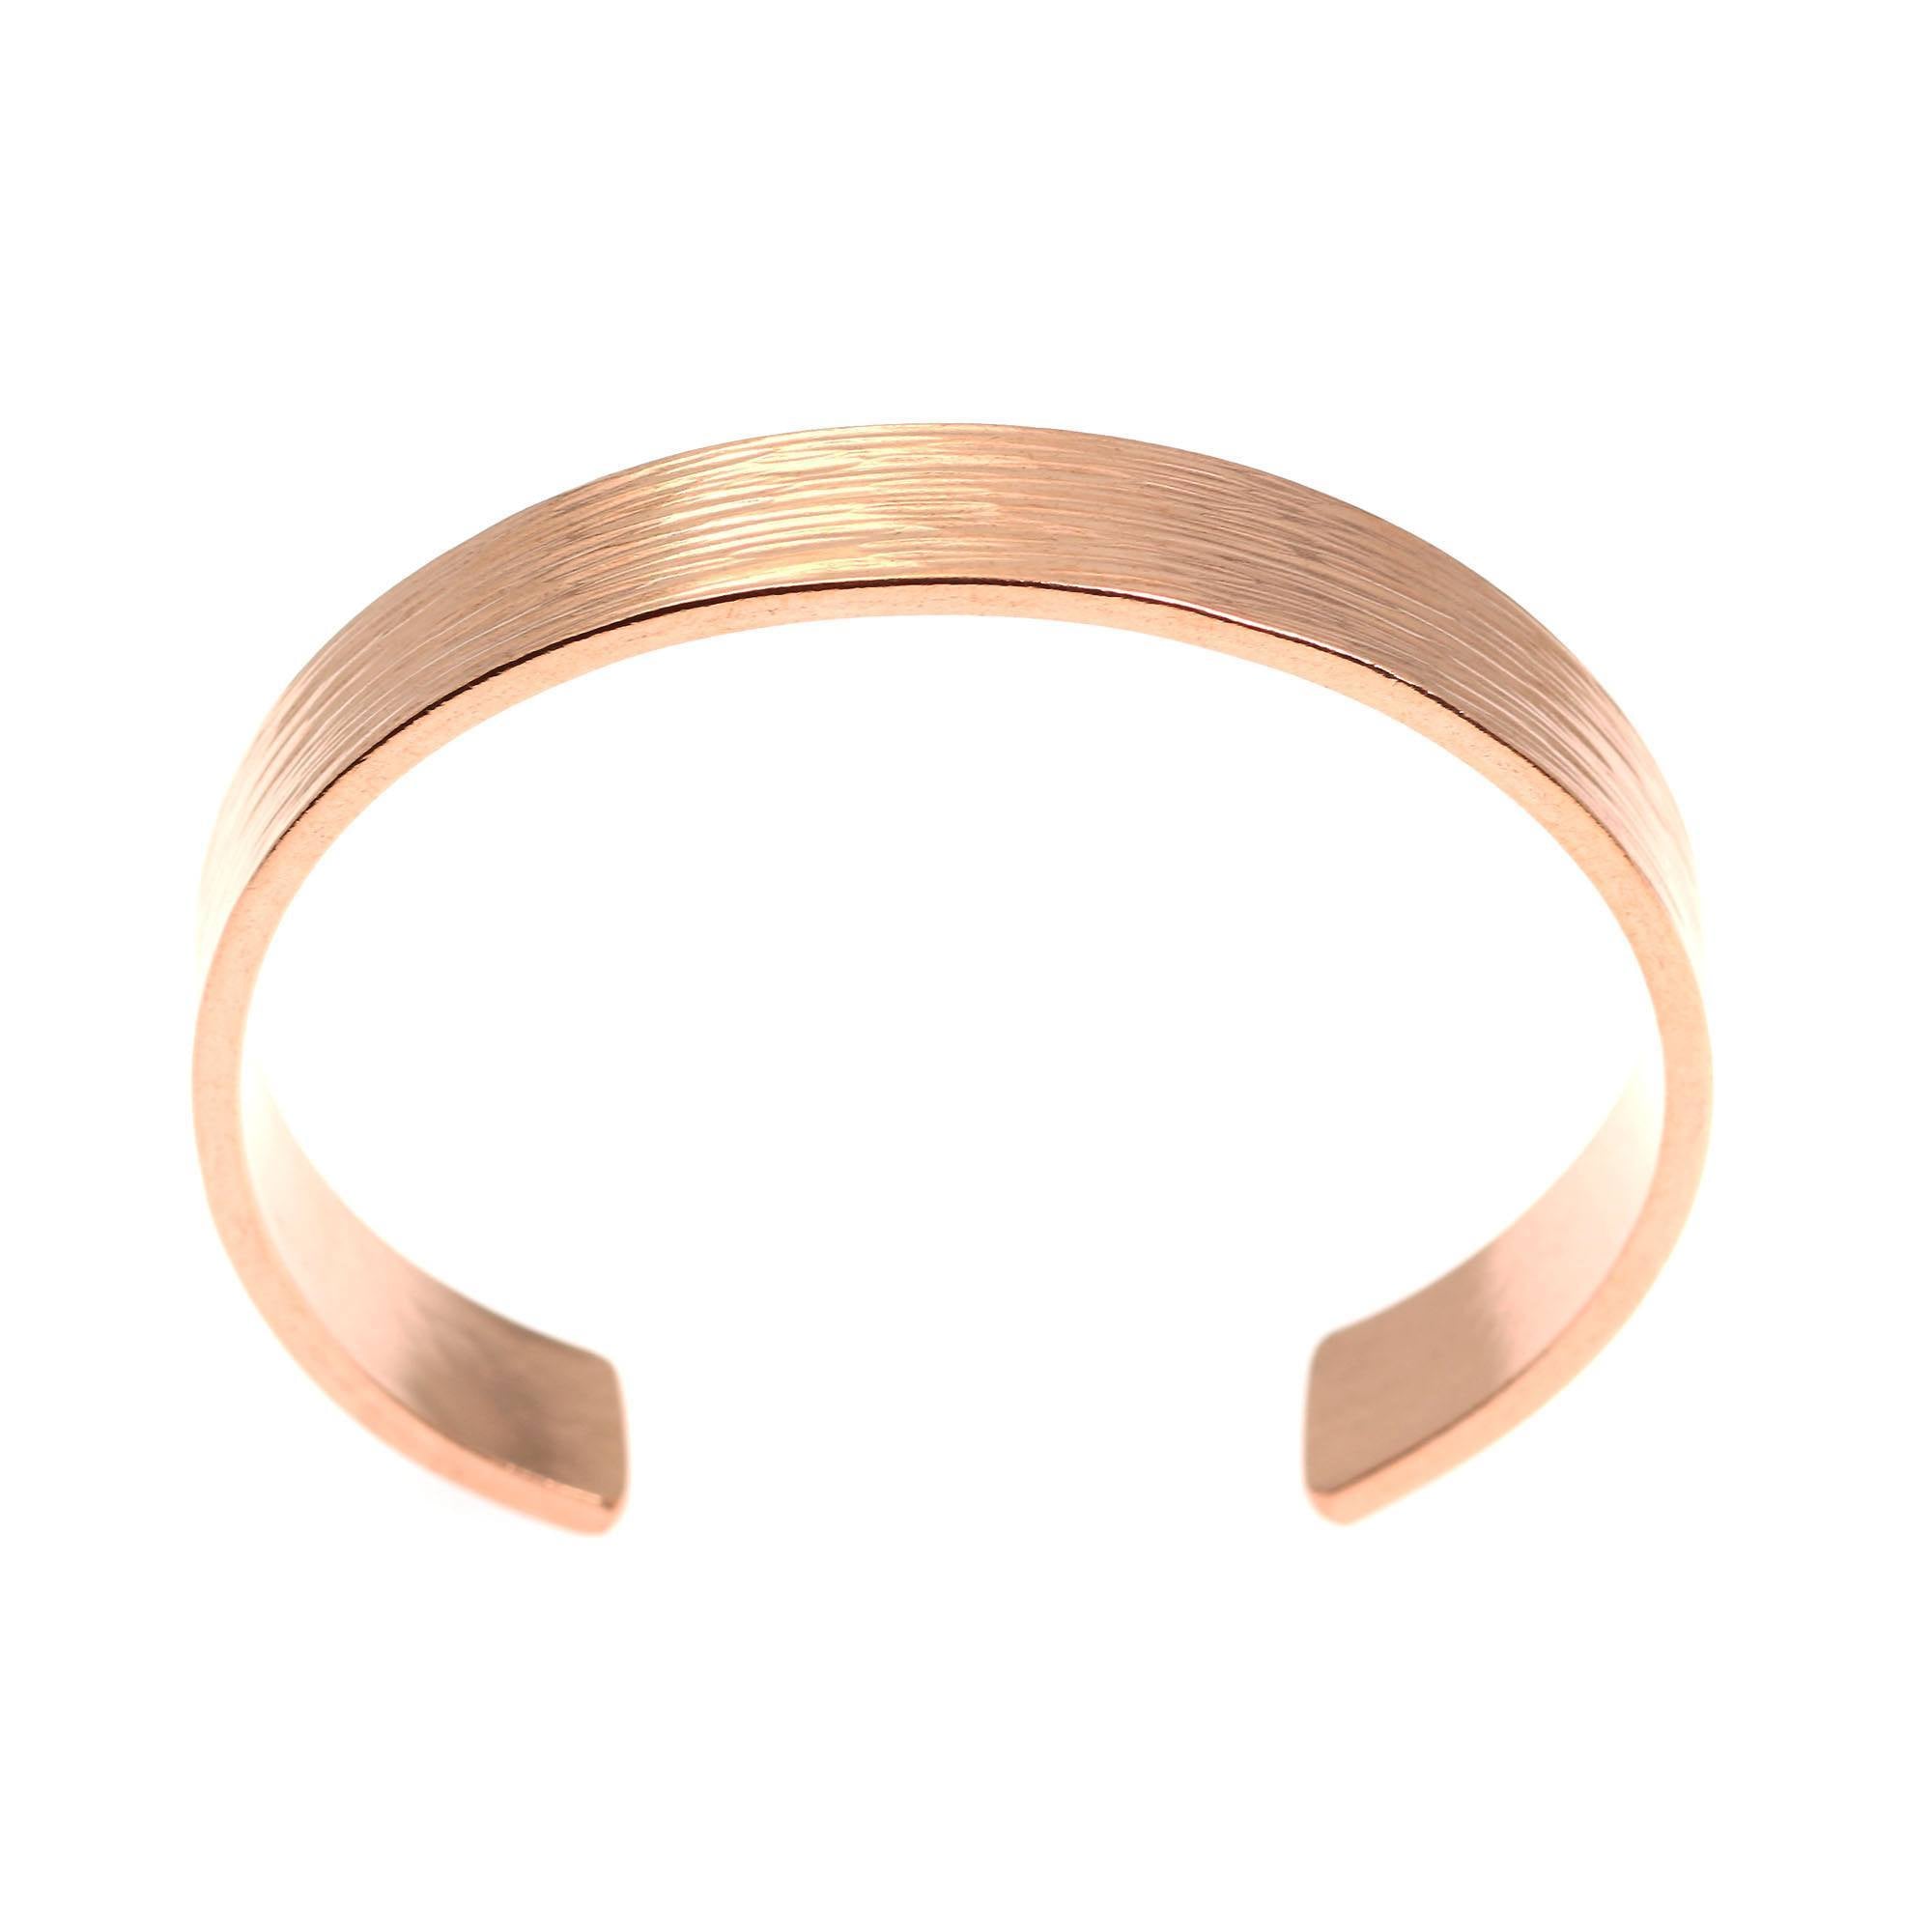 Top of 10mm Wide Bark Copper Cuff Bracelet 